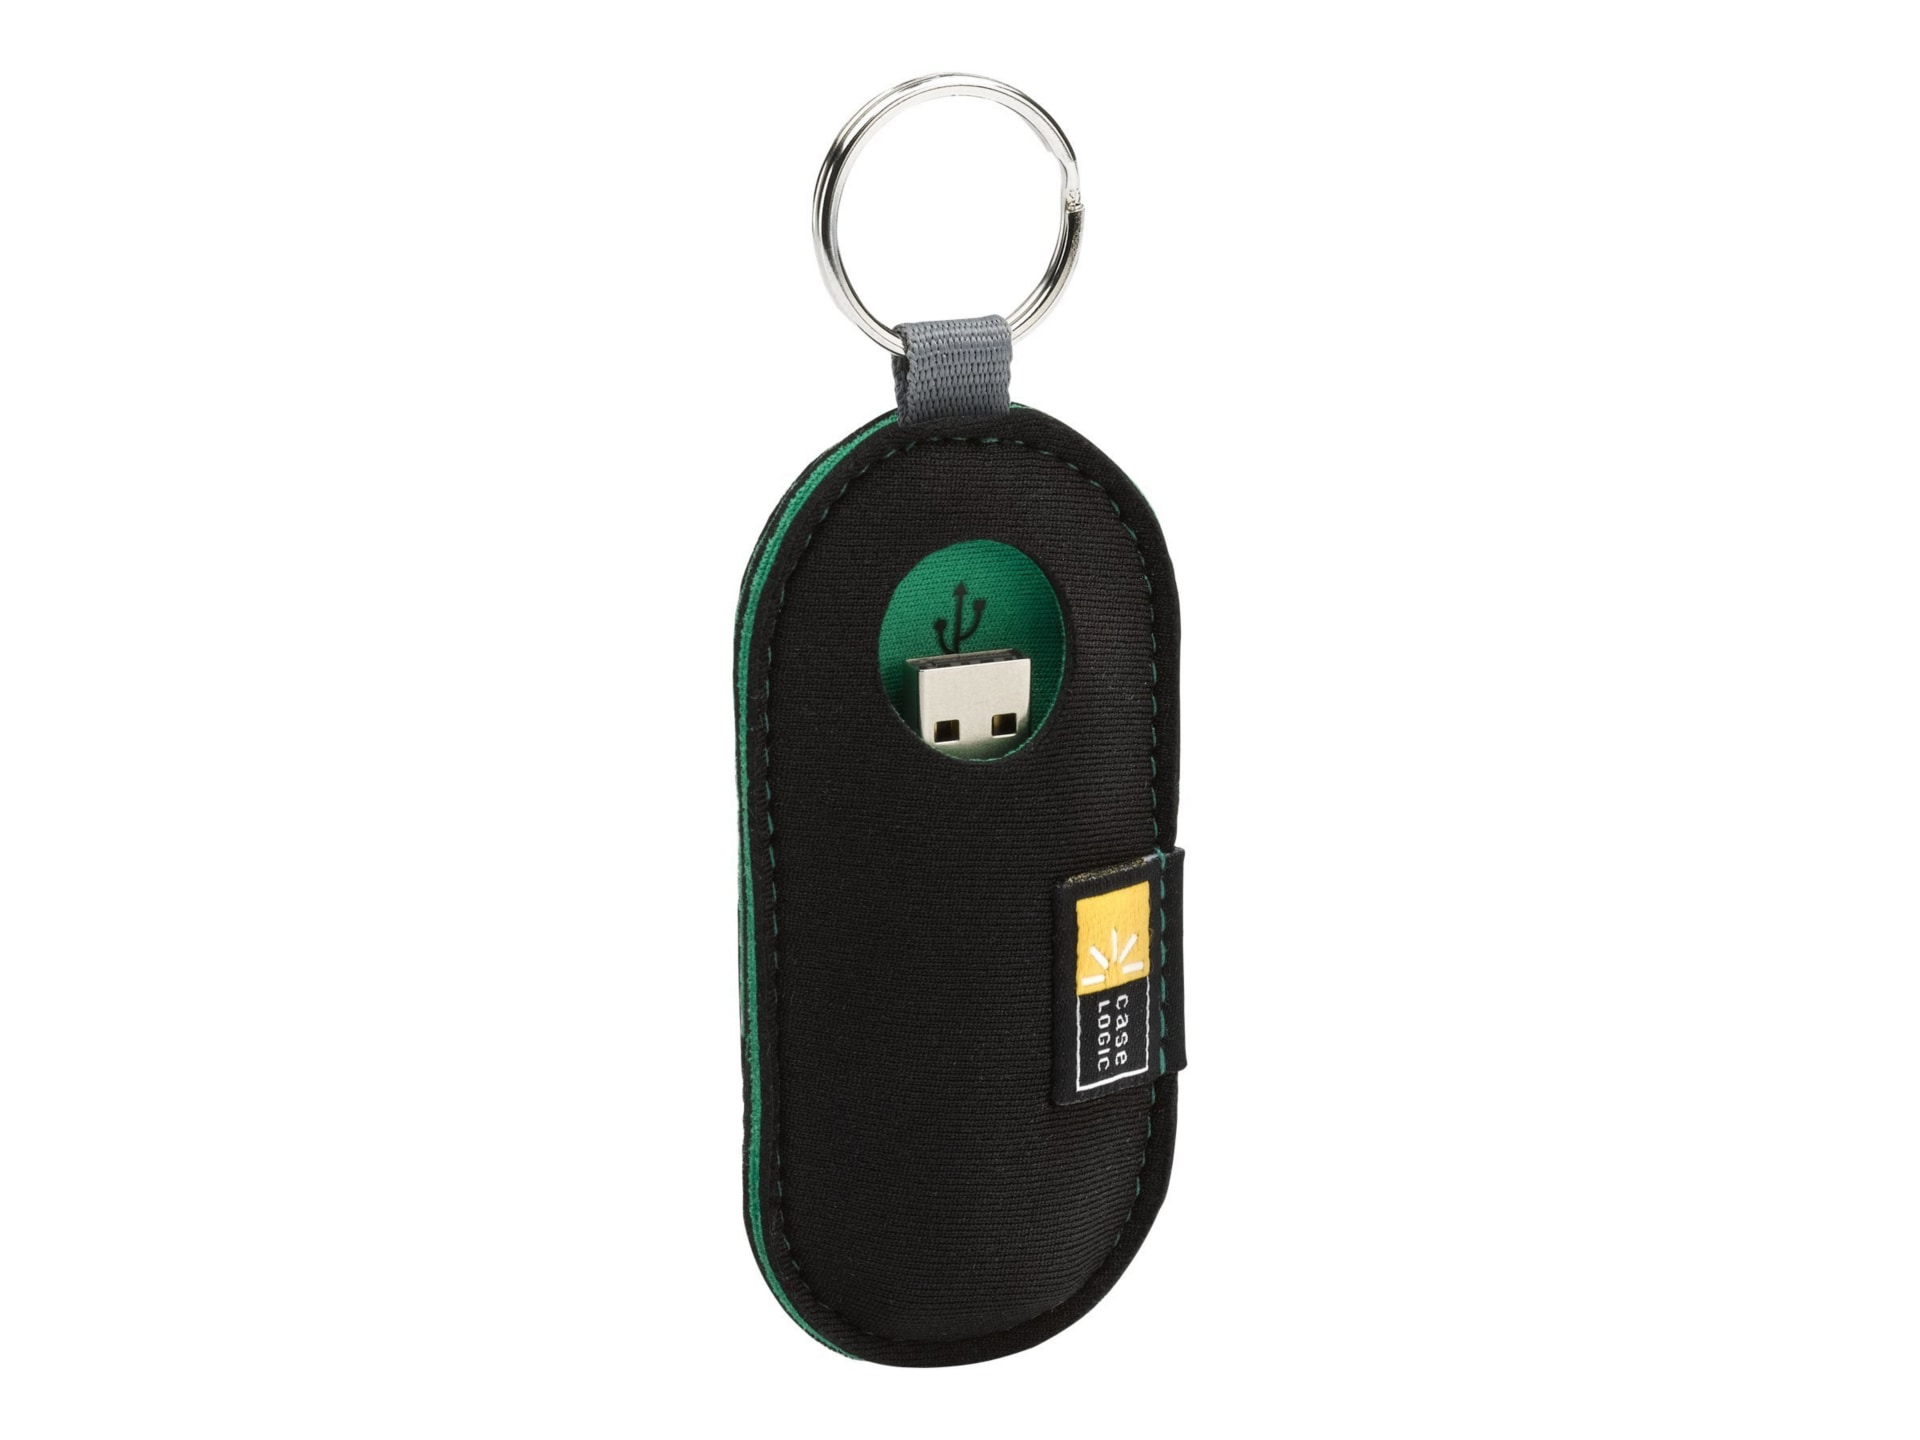 Case Logic USB drive shuttle - USB flash drive case